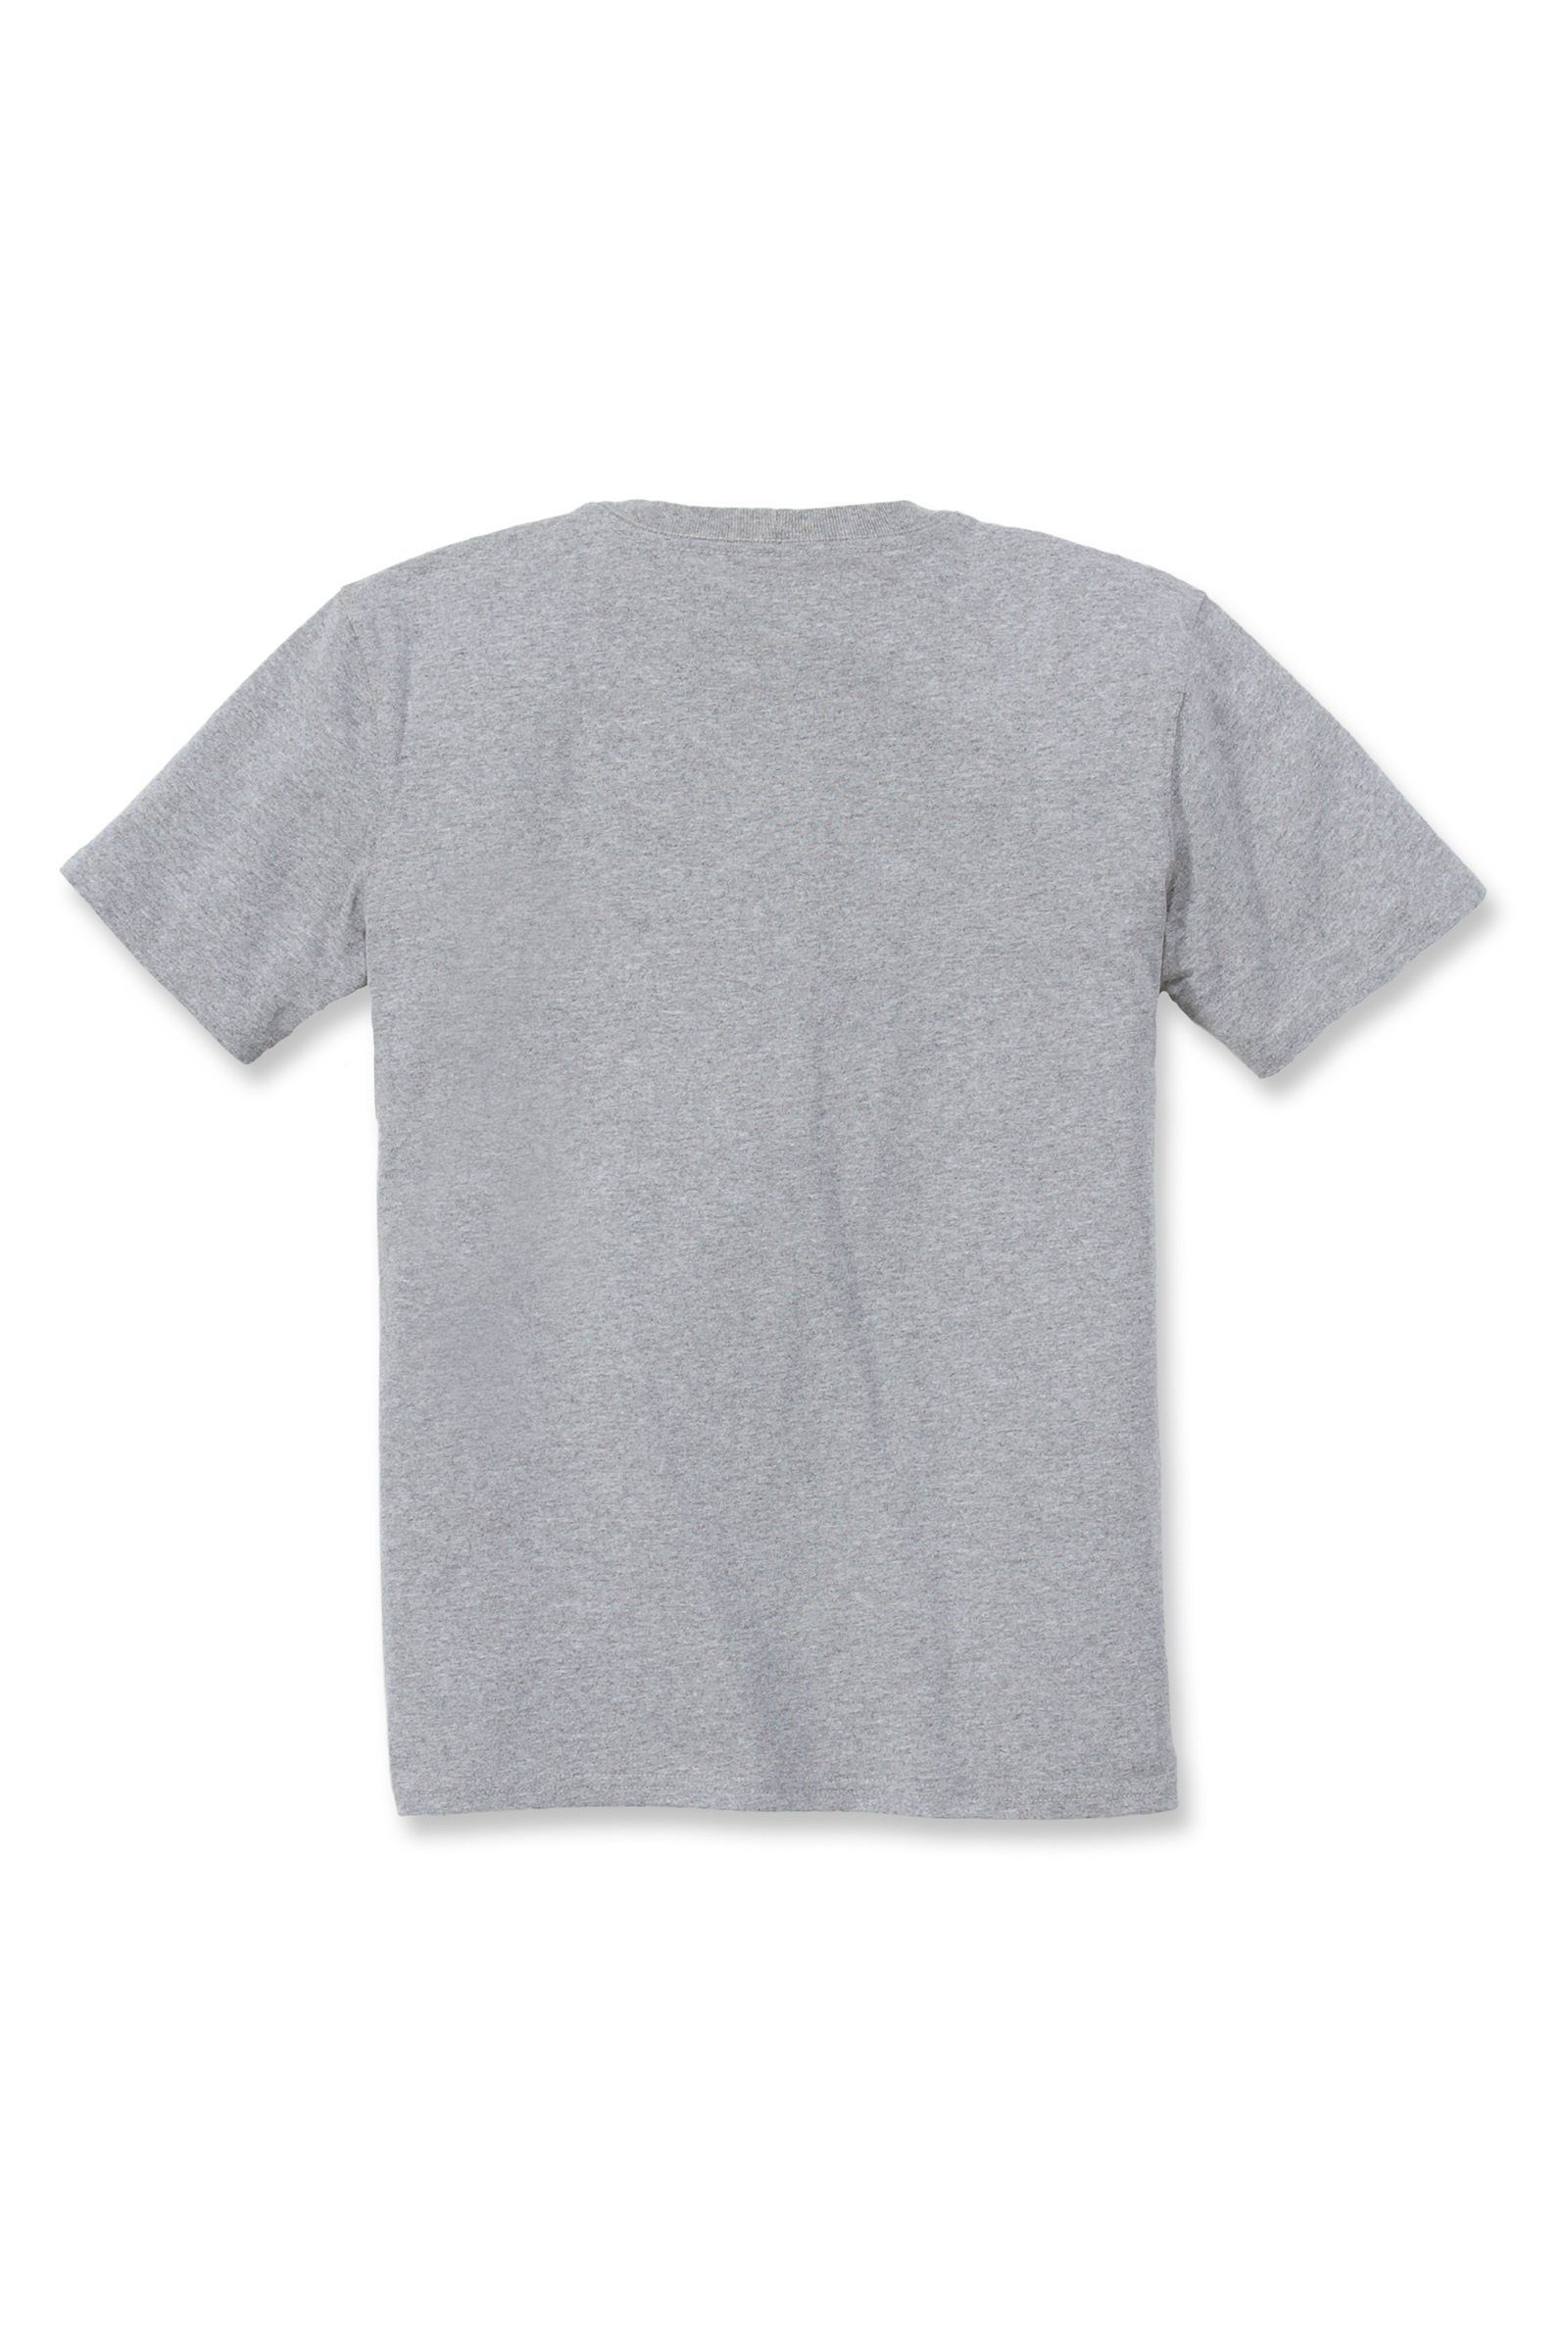 Pocket Carhartt T-Shirt T-Shirt Carhartt Heavyweight grey Loose Adult Fit Short-Sleeve heather Damen